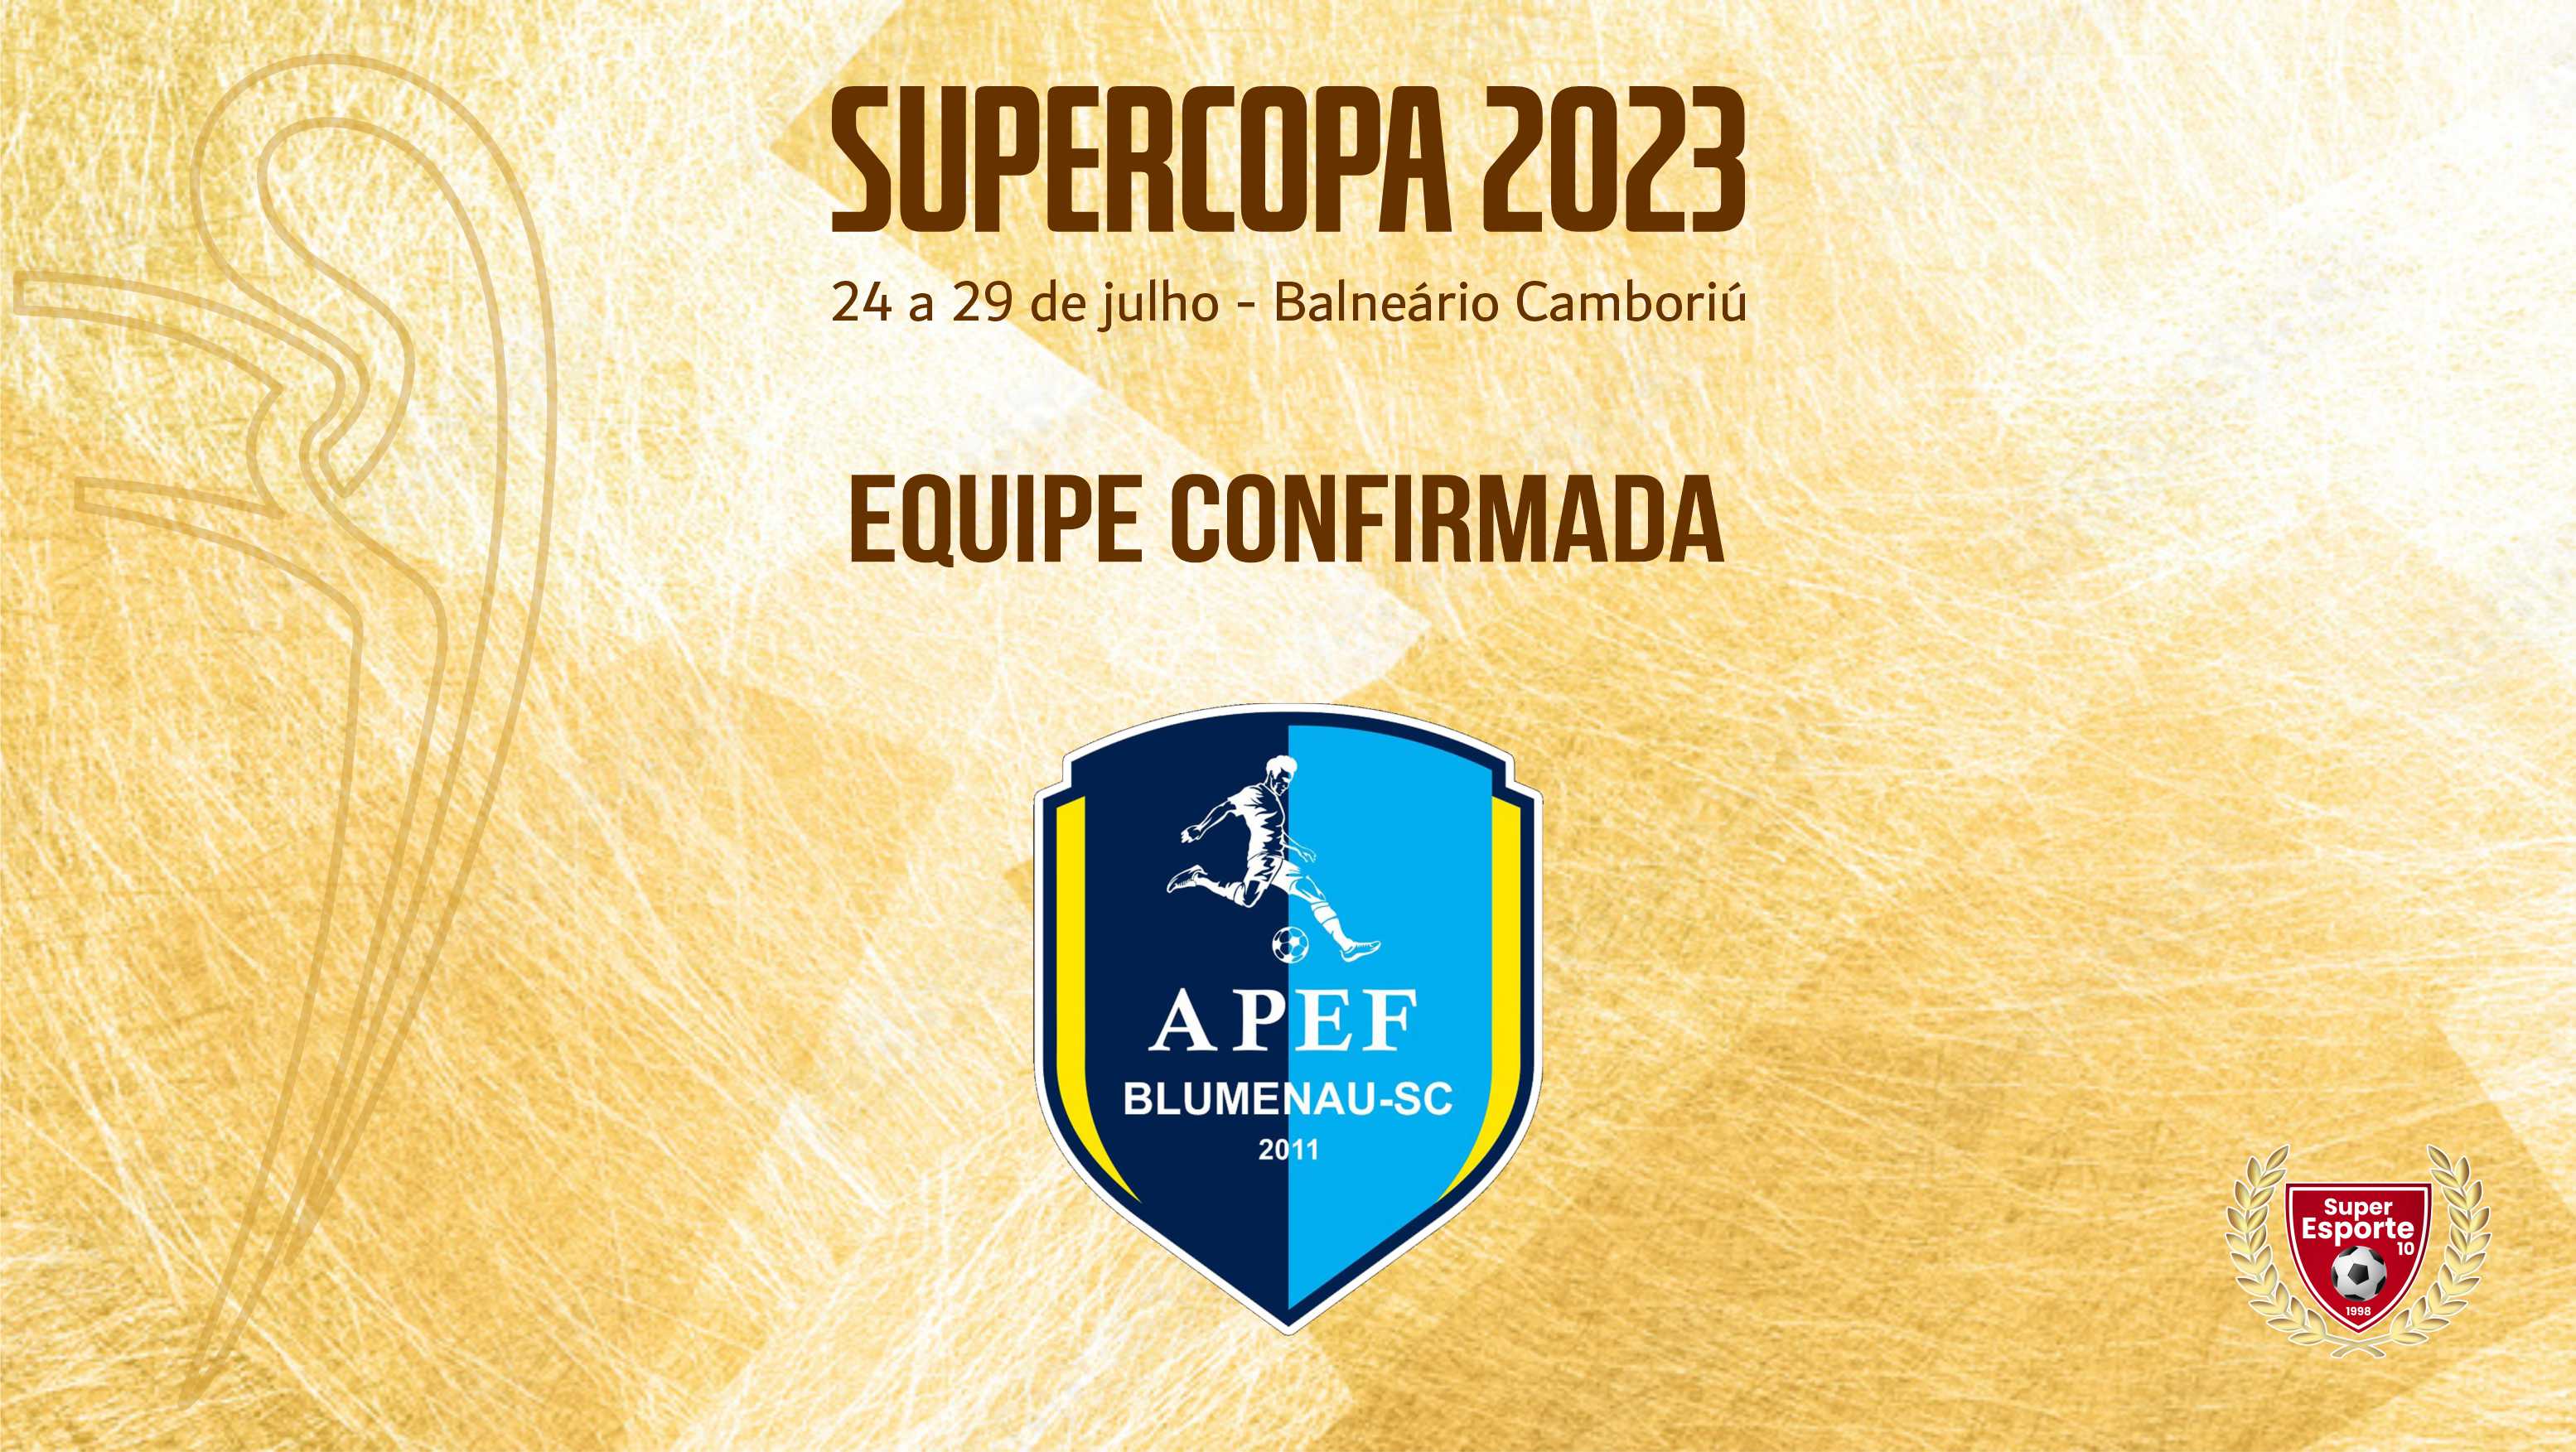 APEF/Postes Blumenau será presença na 19ª Supercopa